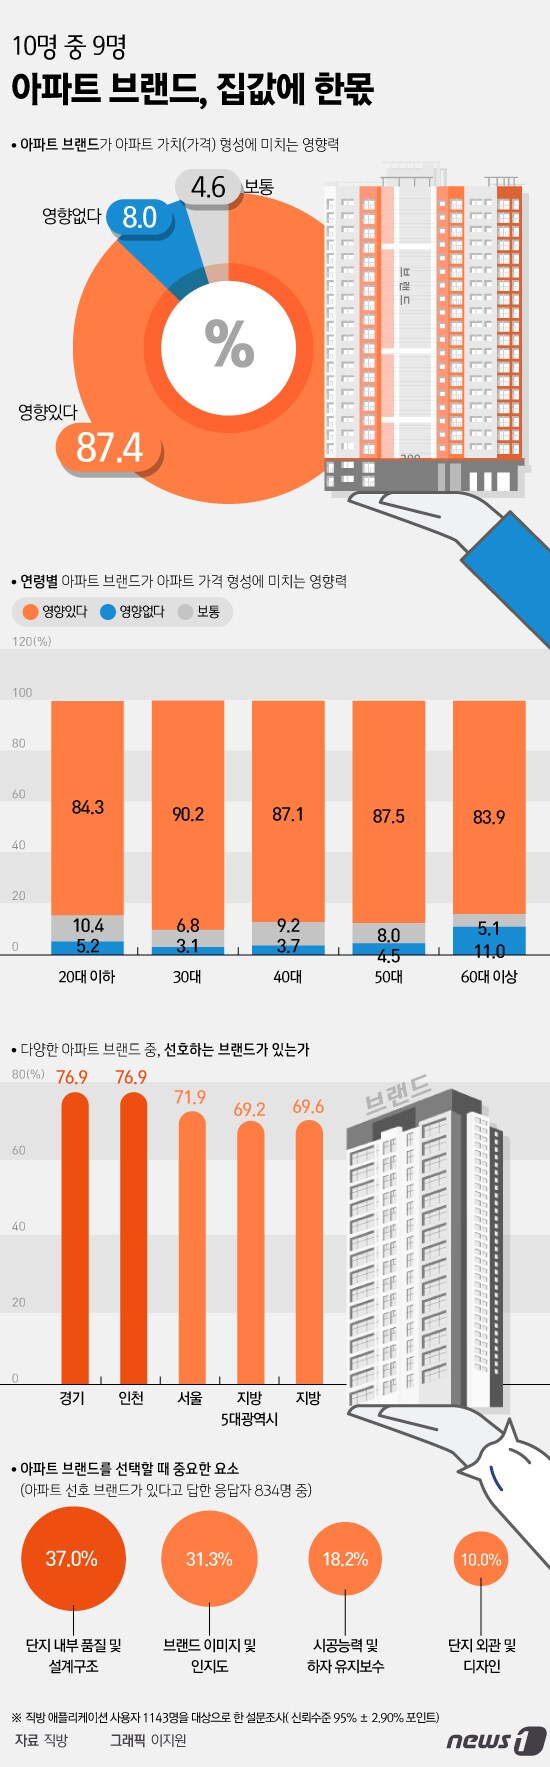 [그래픽뉴스] 10명 중 9명 "아파트 브랜드, 집값에 한몫"